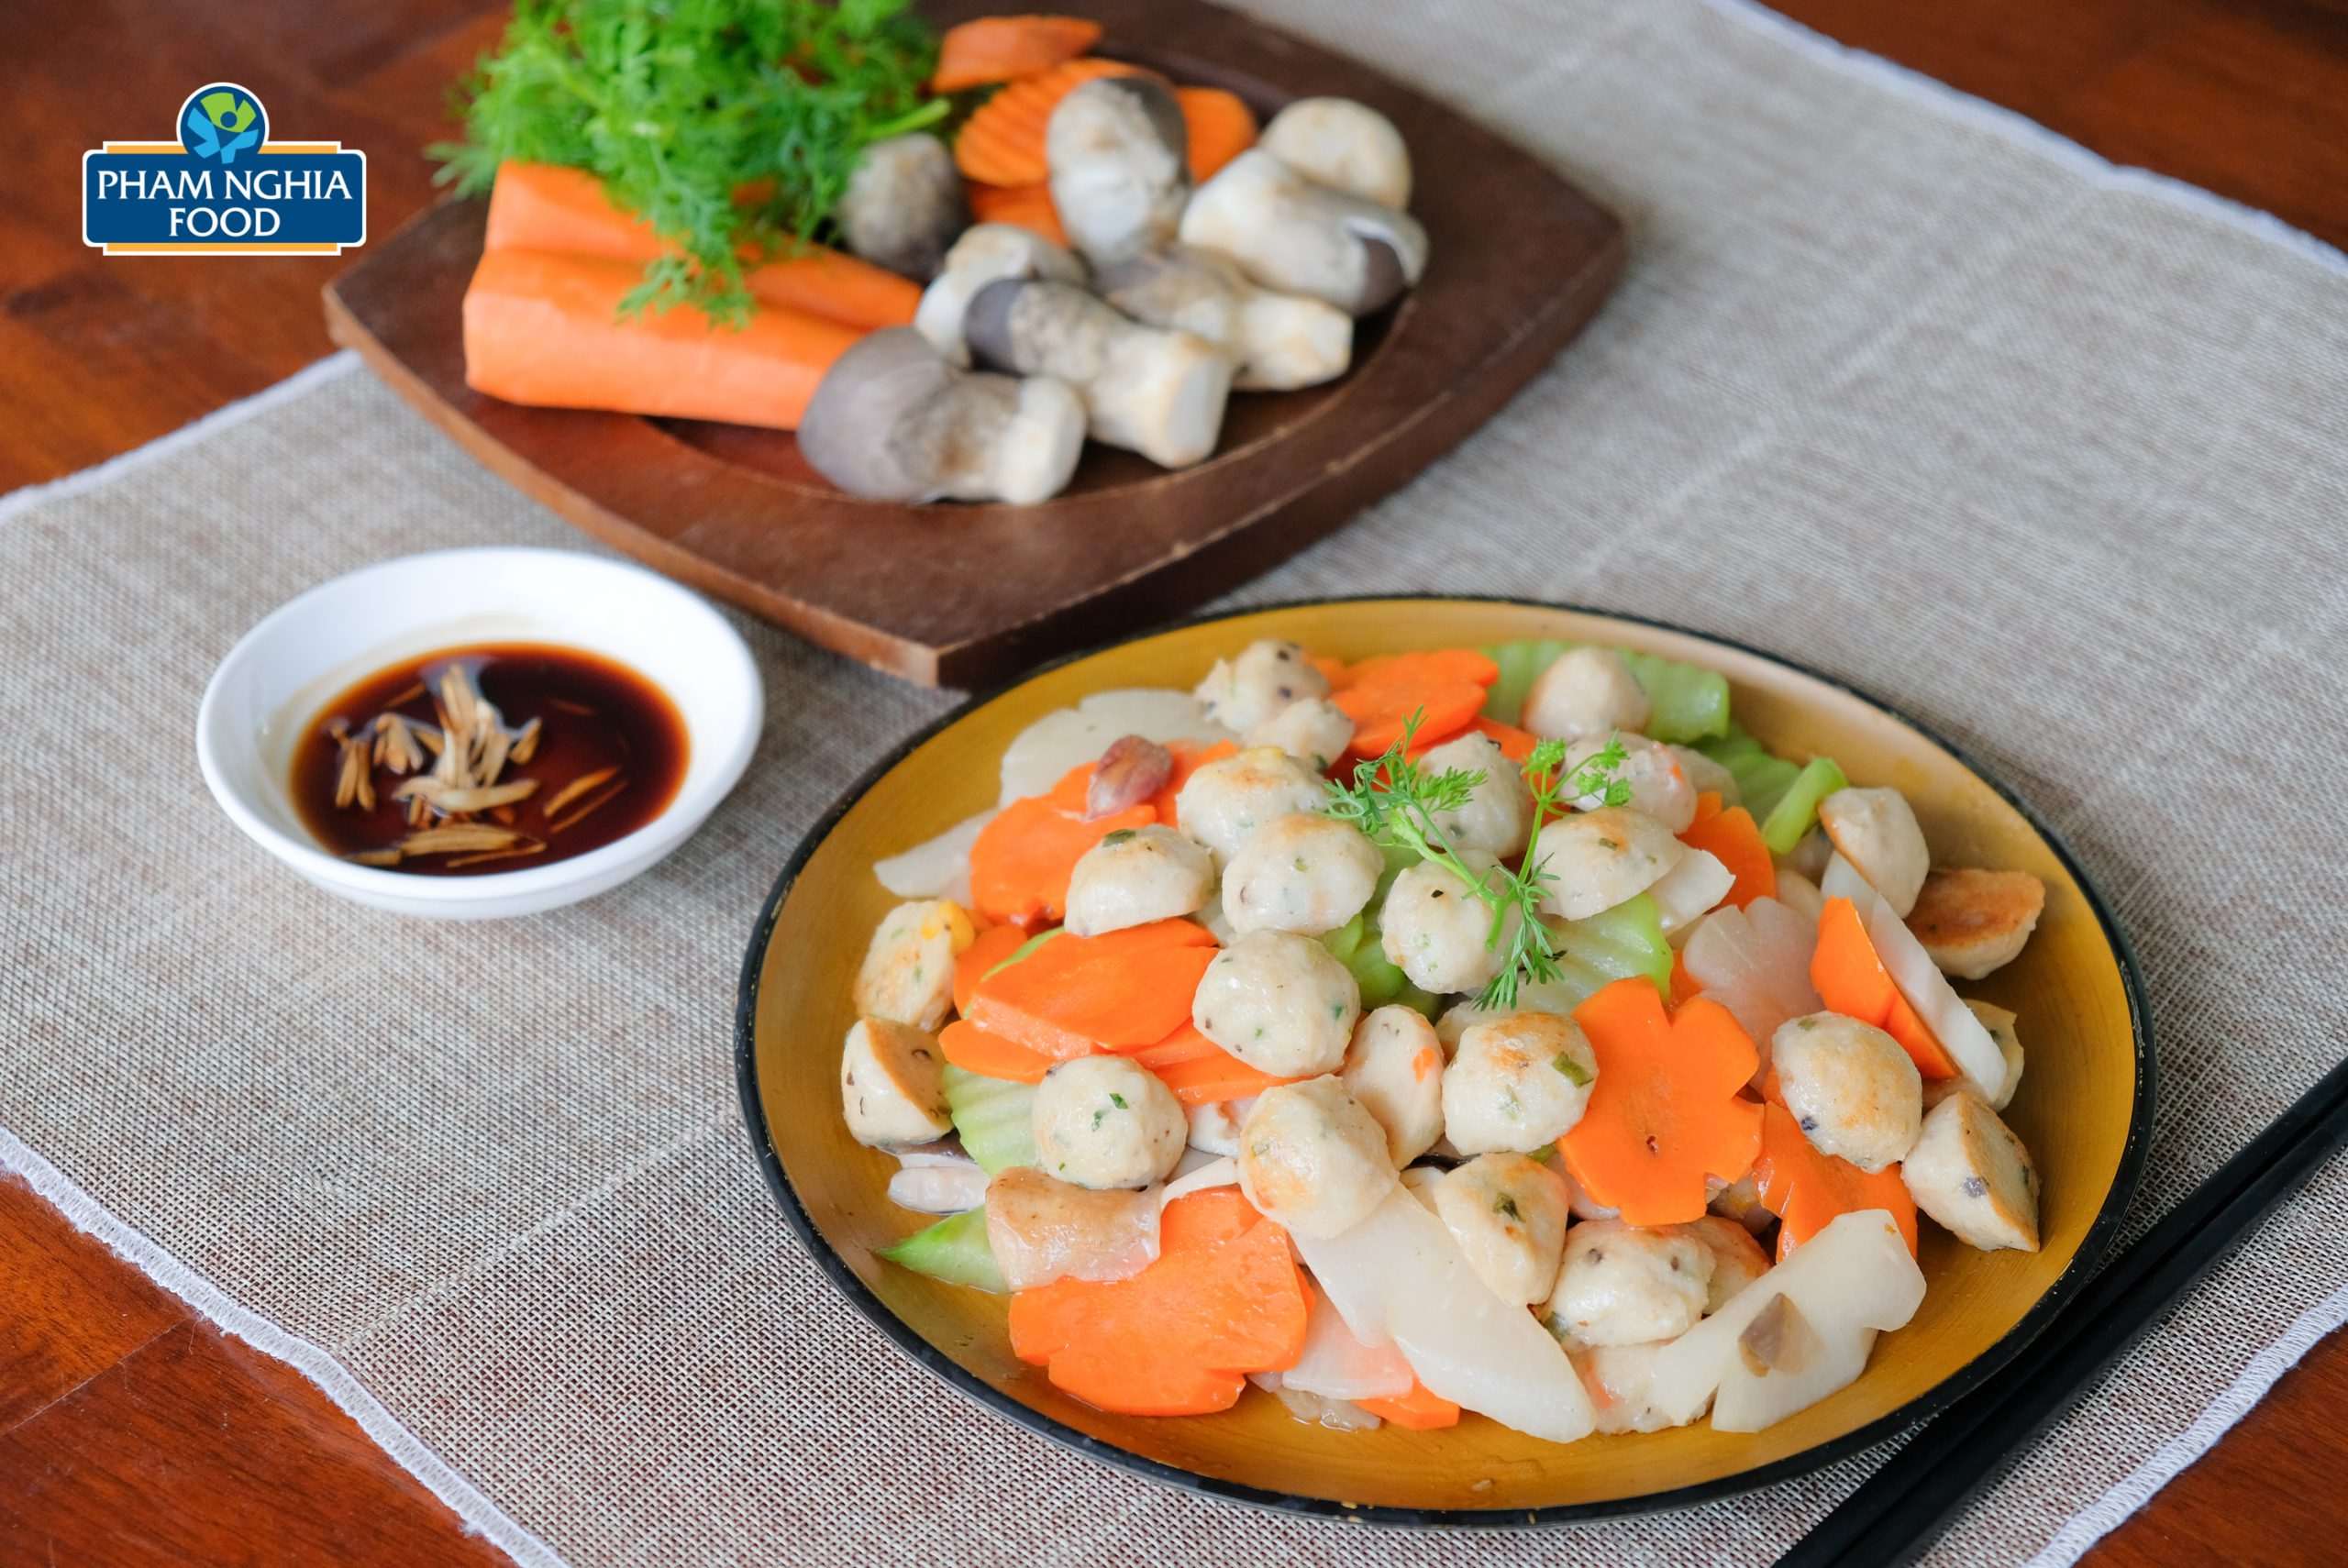 Pham Nghia Food đa dạng dòng sản phẩm từ đặc sản cá thát lát